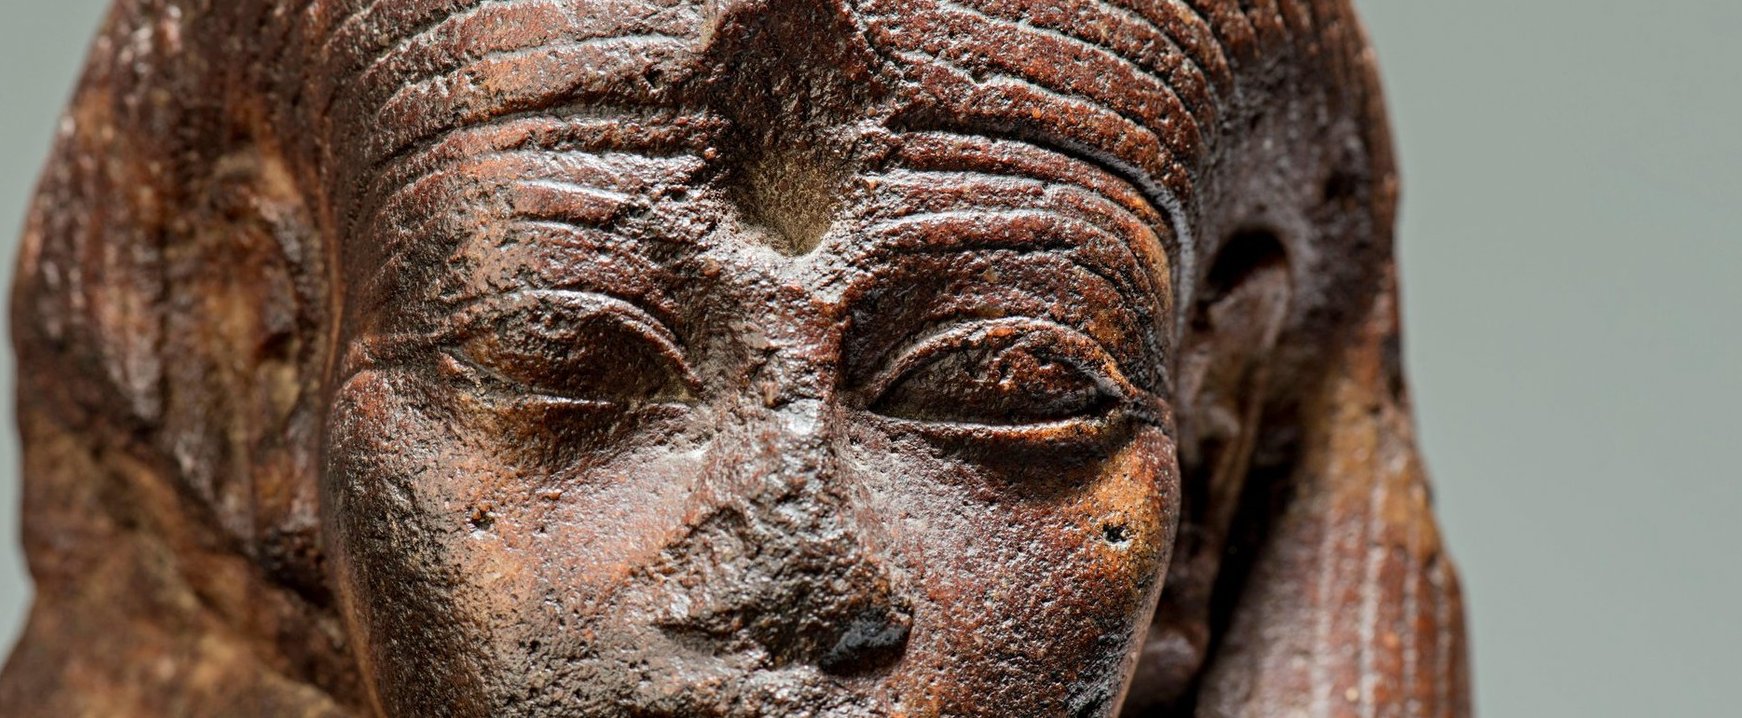 Megfejtették Tutanhamon fáraó átkát, ez okozta a rejtélyes haláleseteket